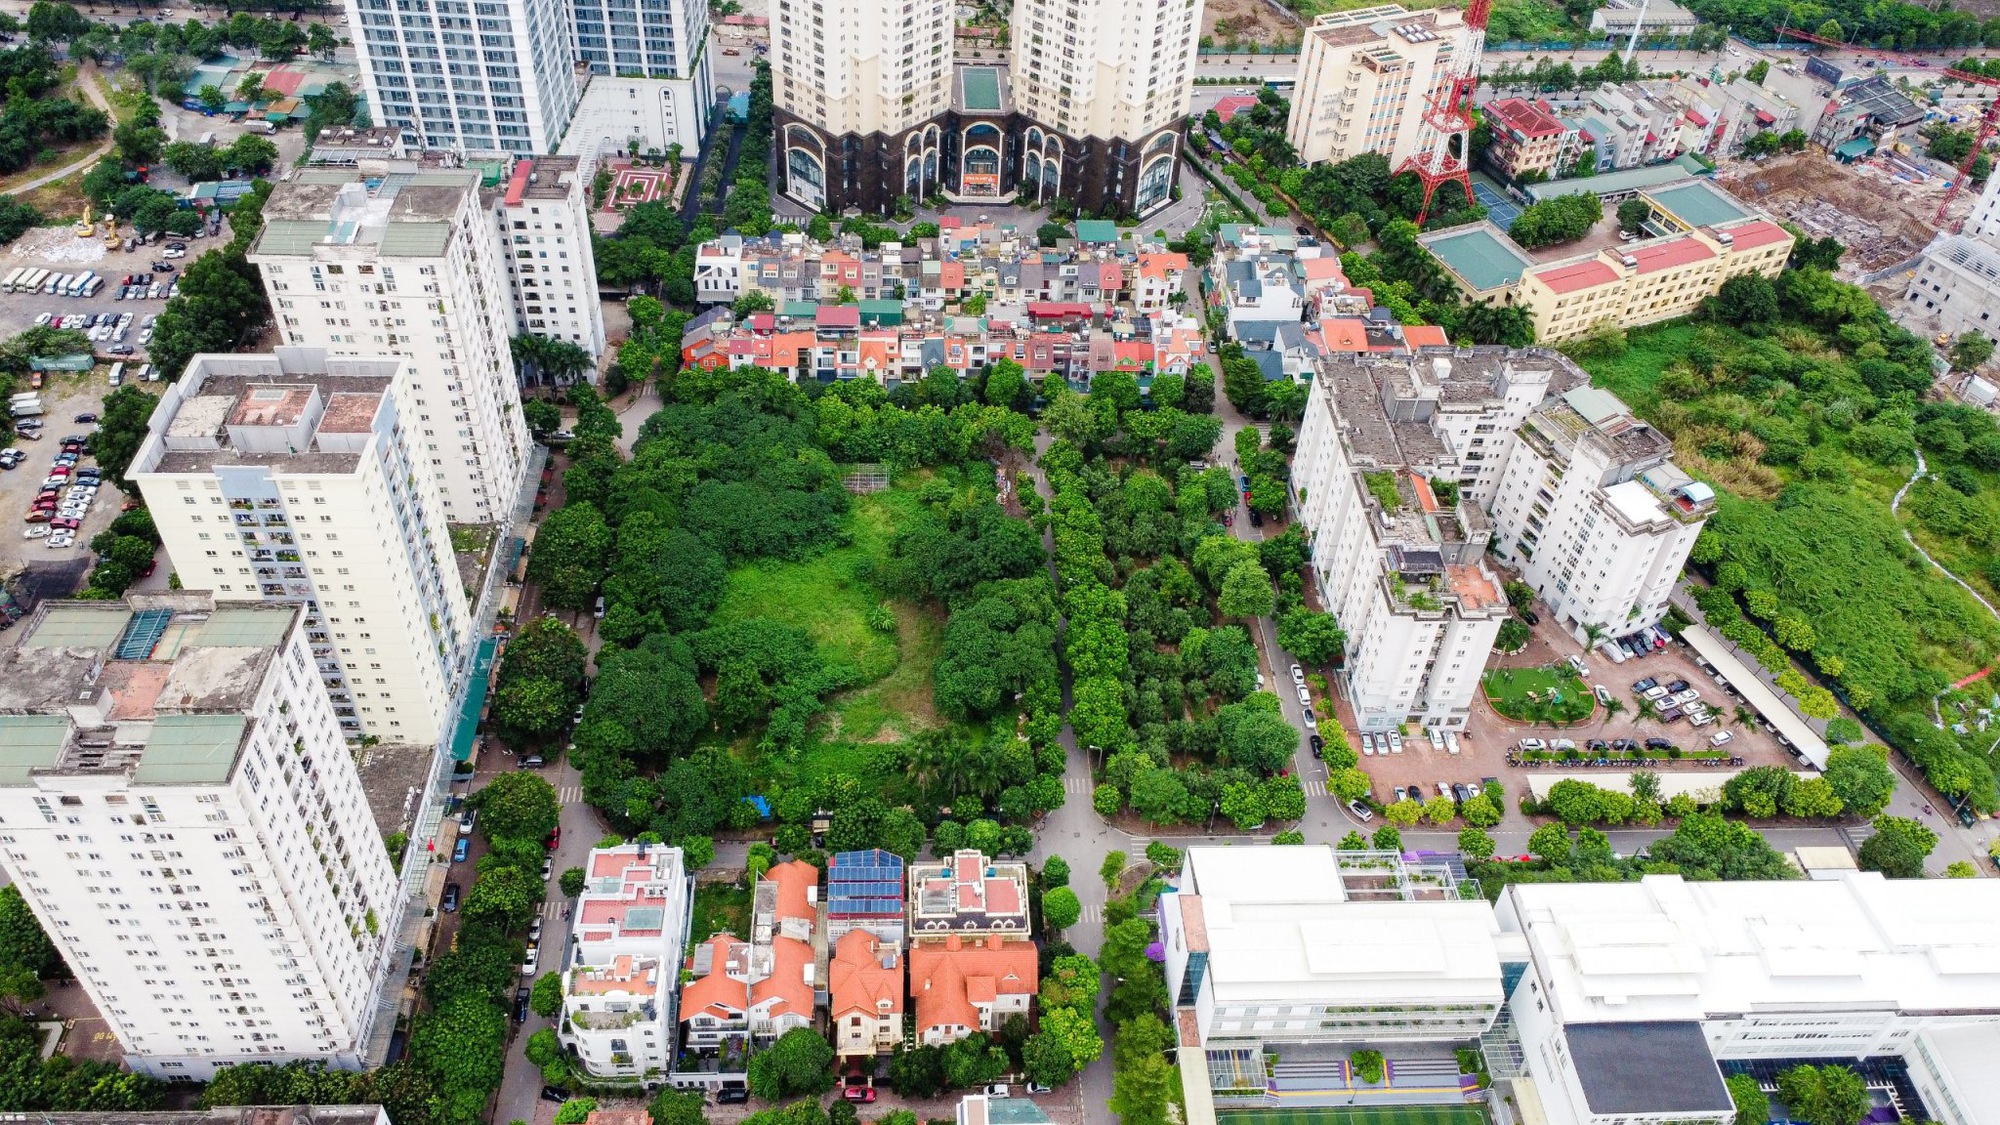 “Hô biến” quỹ đất 20% thành biệt thự triệu đô, cao ốc tại Khu đô thị mới Trung Văn - Ảnh 1.